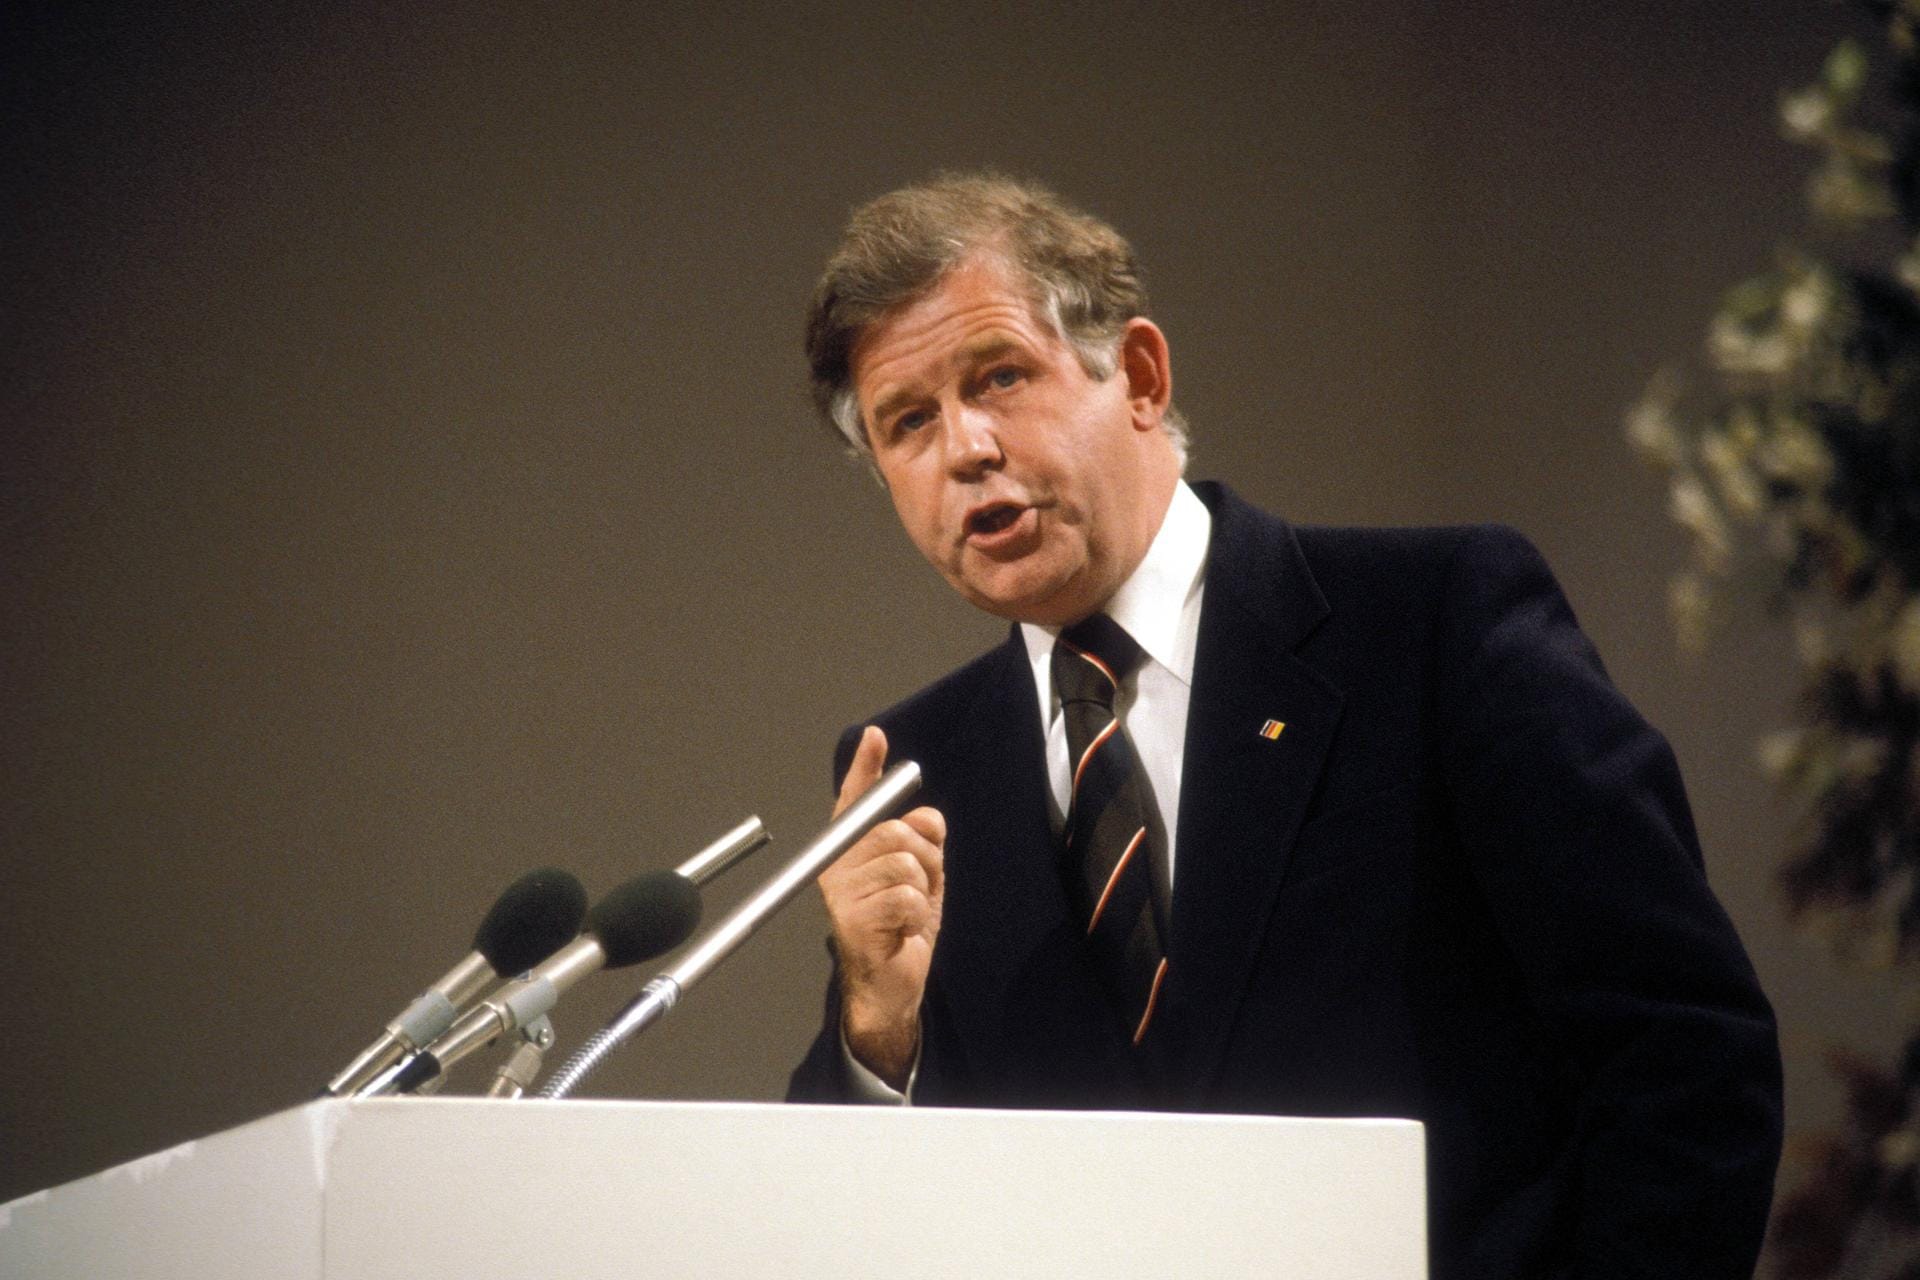 Kurt Biedenkopf im Jahr 1976: Von 1973 bis 1977 ist er auf Vorschlag Helmut Kohls als Generalsekretär der CDU tätig.